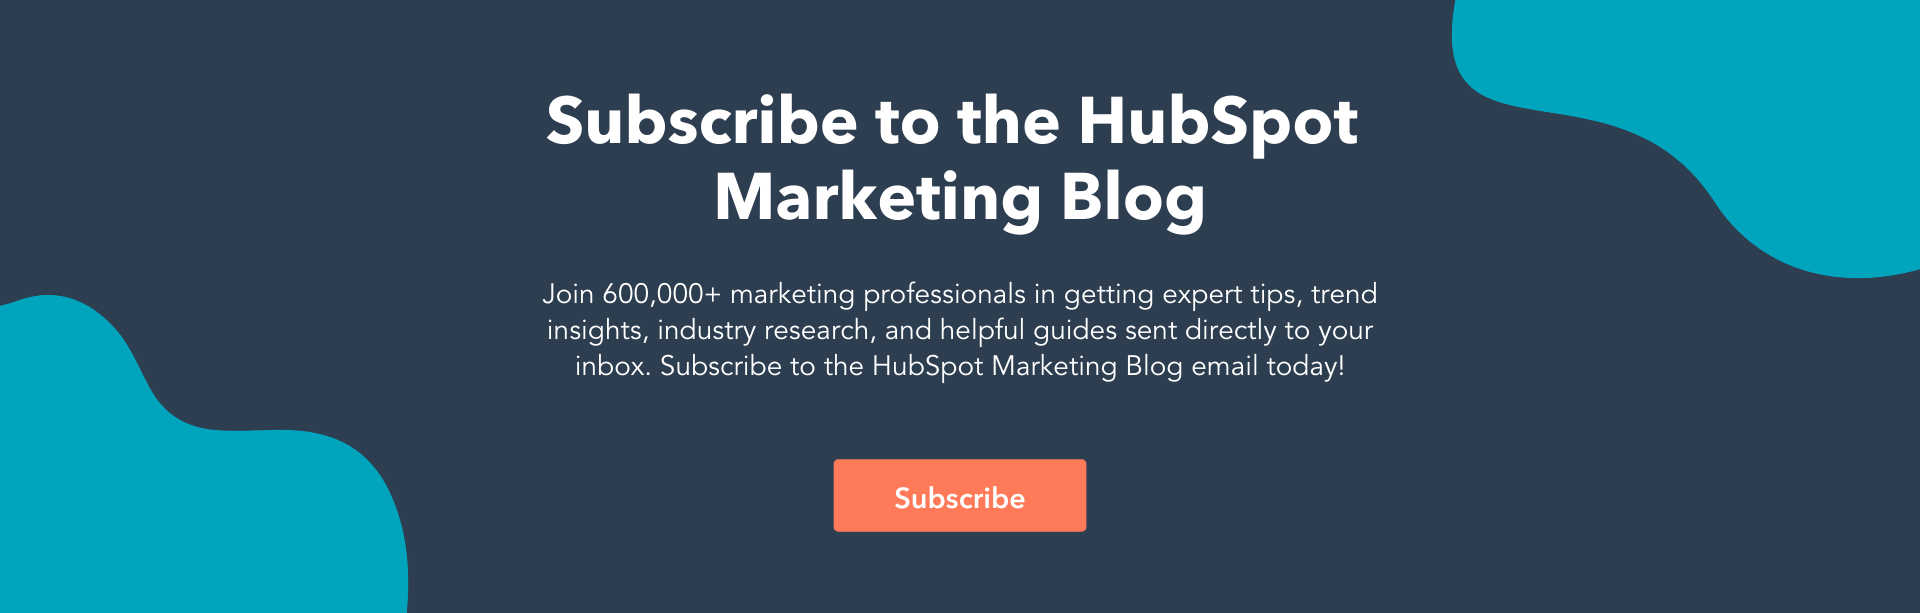 hubspot marketing blog